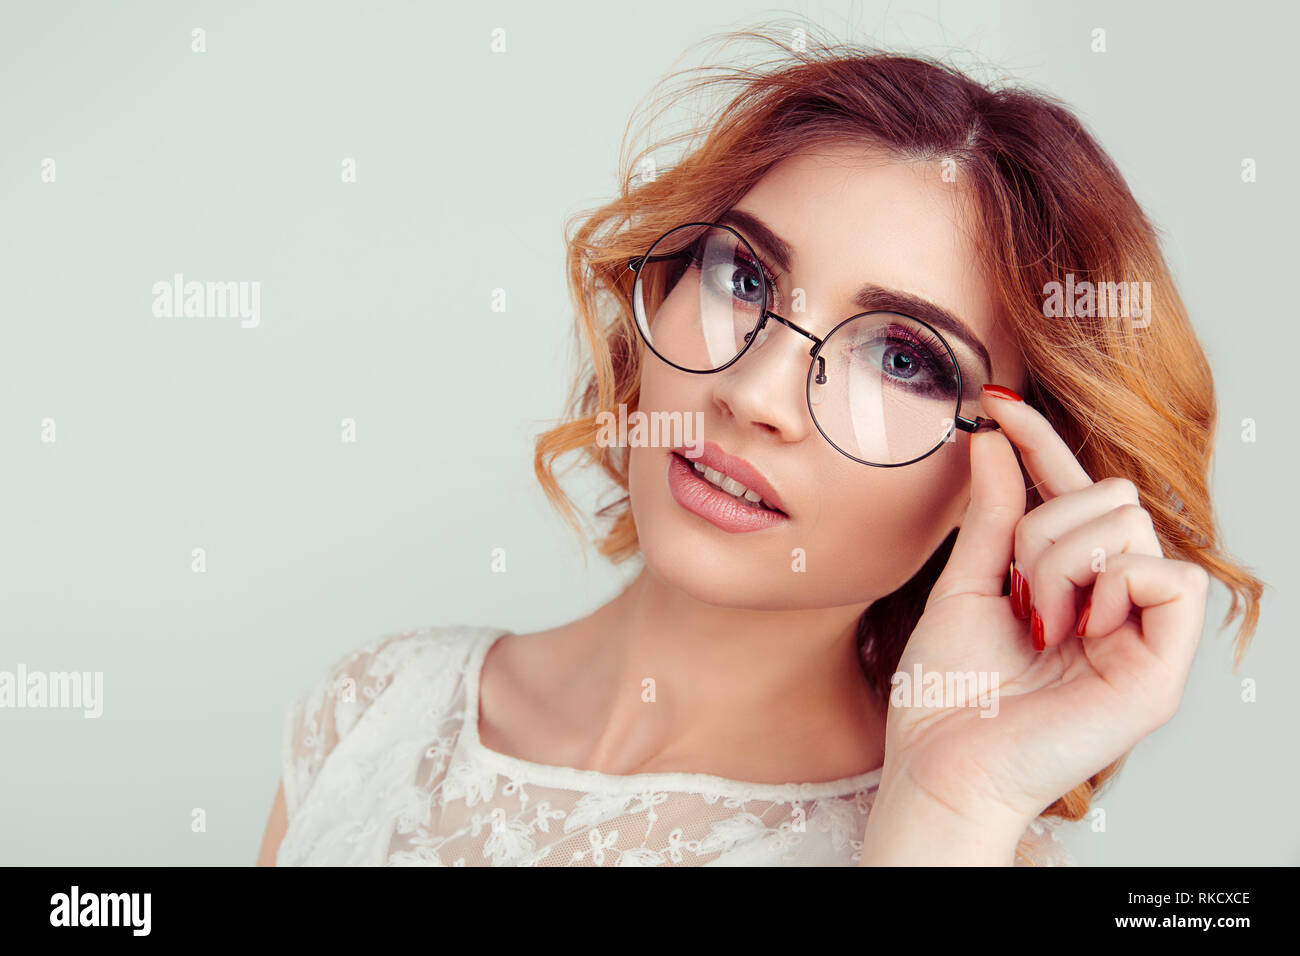 Jeune femme blonde frisée européenne holding lunettes rondes Photo Stock -  Alamy